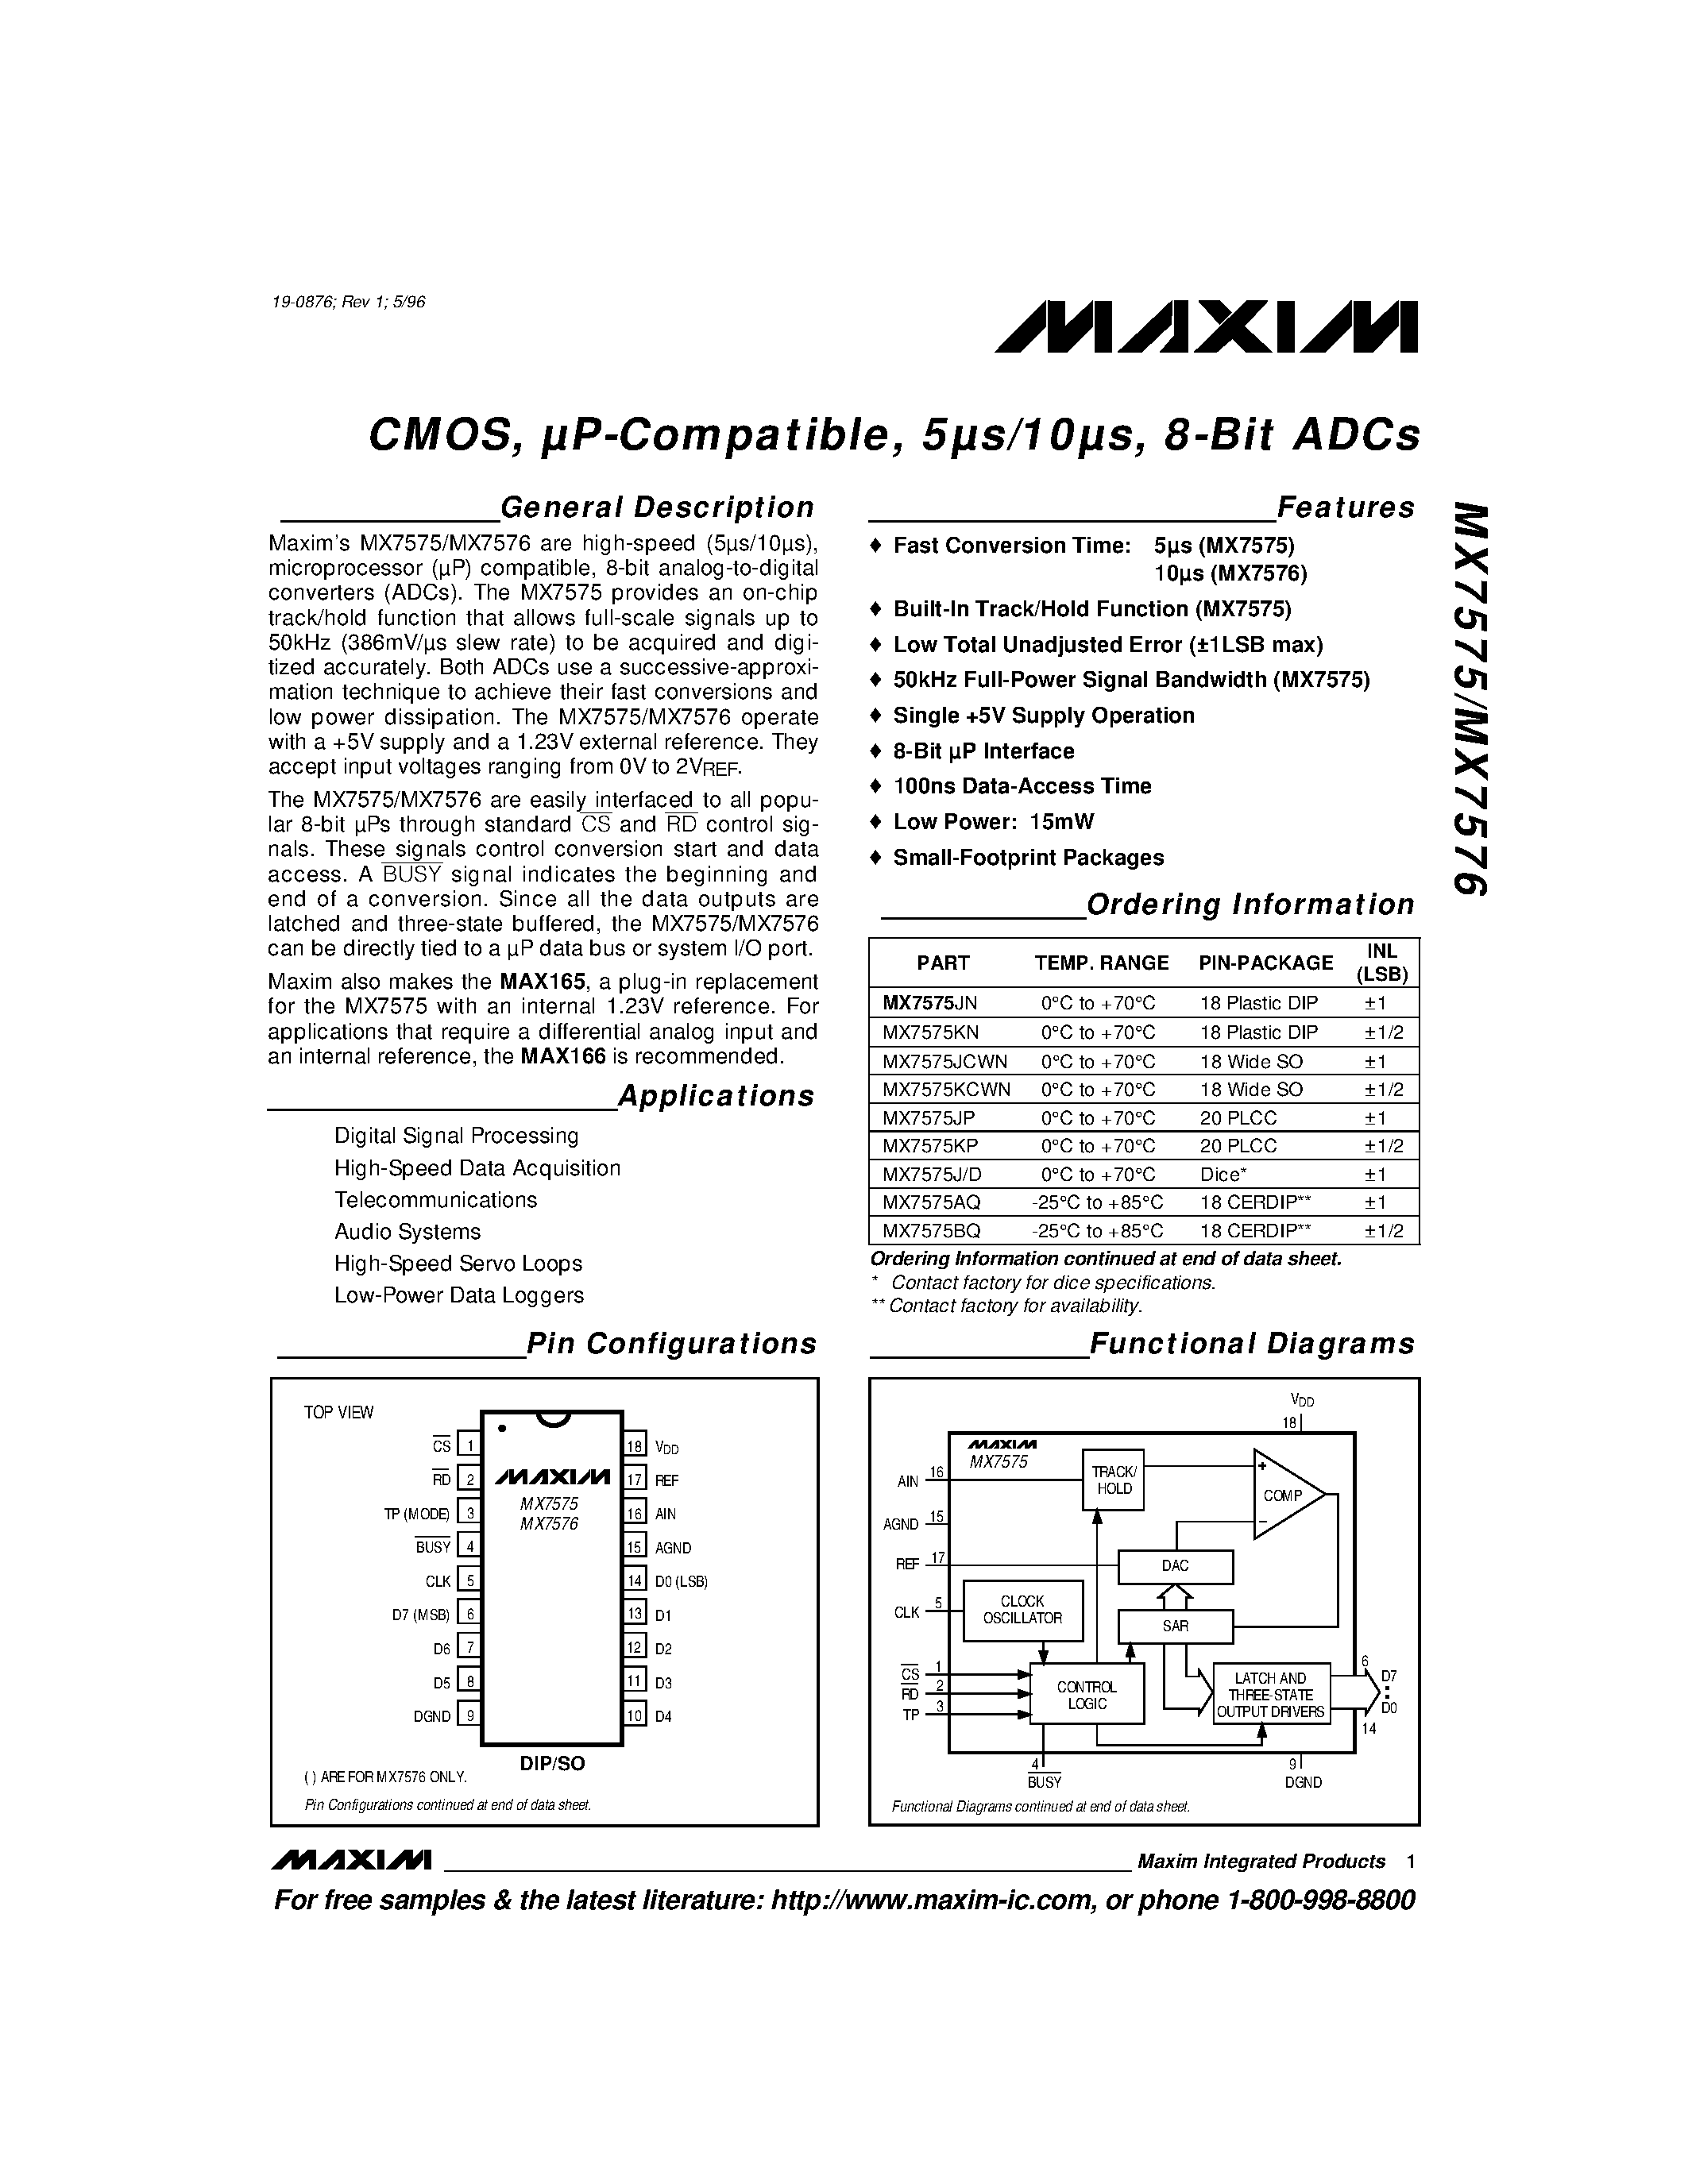 Даташит MX7576AQ - CMOS / uP-Compatible / 5s/10s / 8-Bit ADCs страница 1